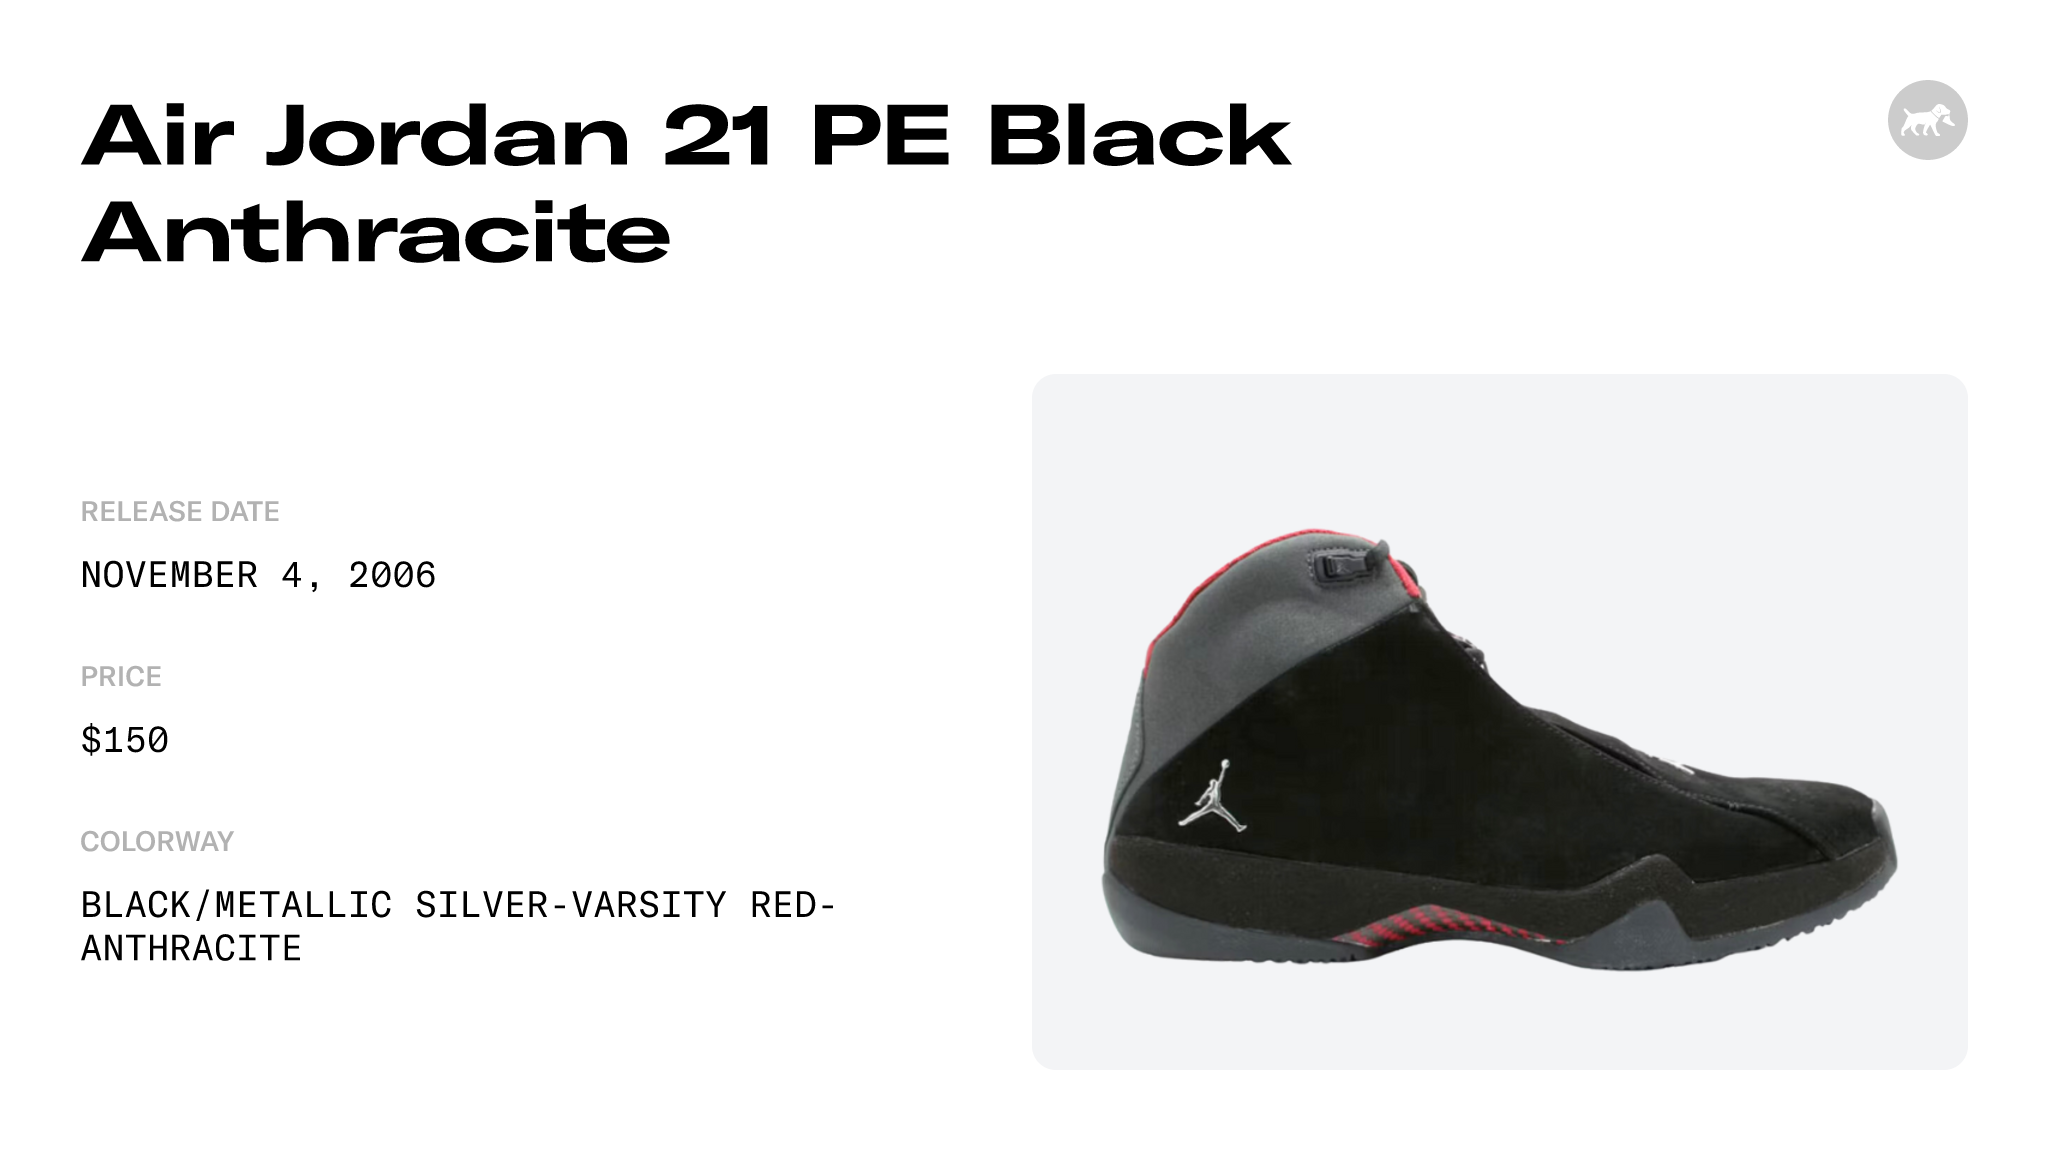 Air Jordan 21 PE Black Anthracite - 314303-061 Raffles and Release Date